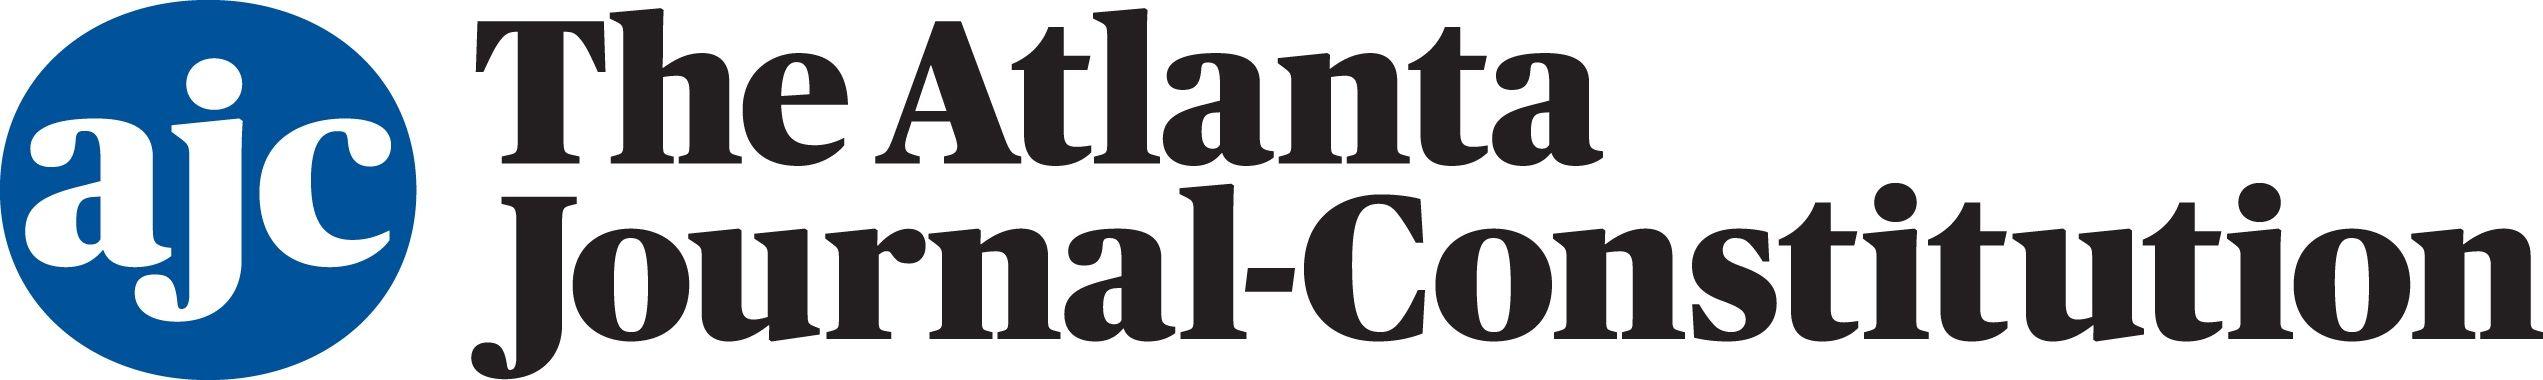 Constitution Logo - Atlanta journal constitution Logos